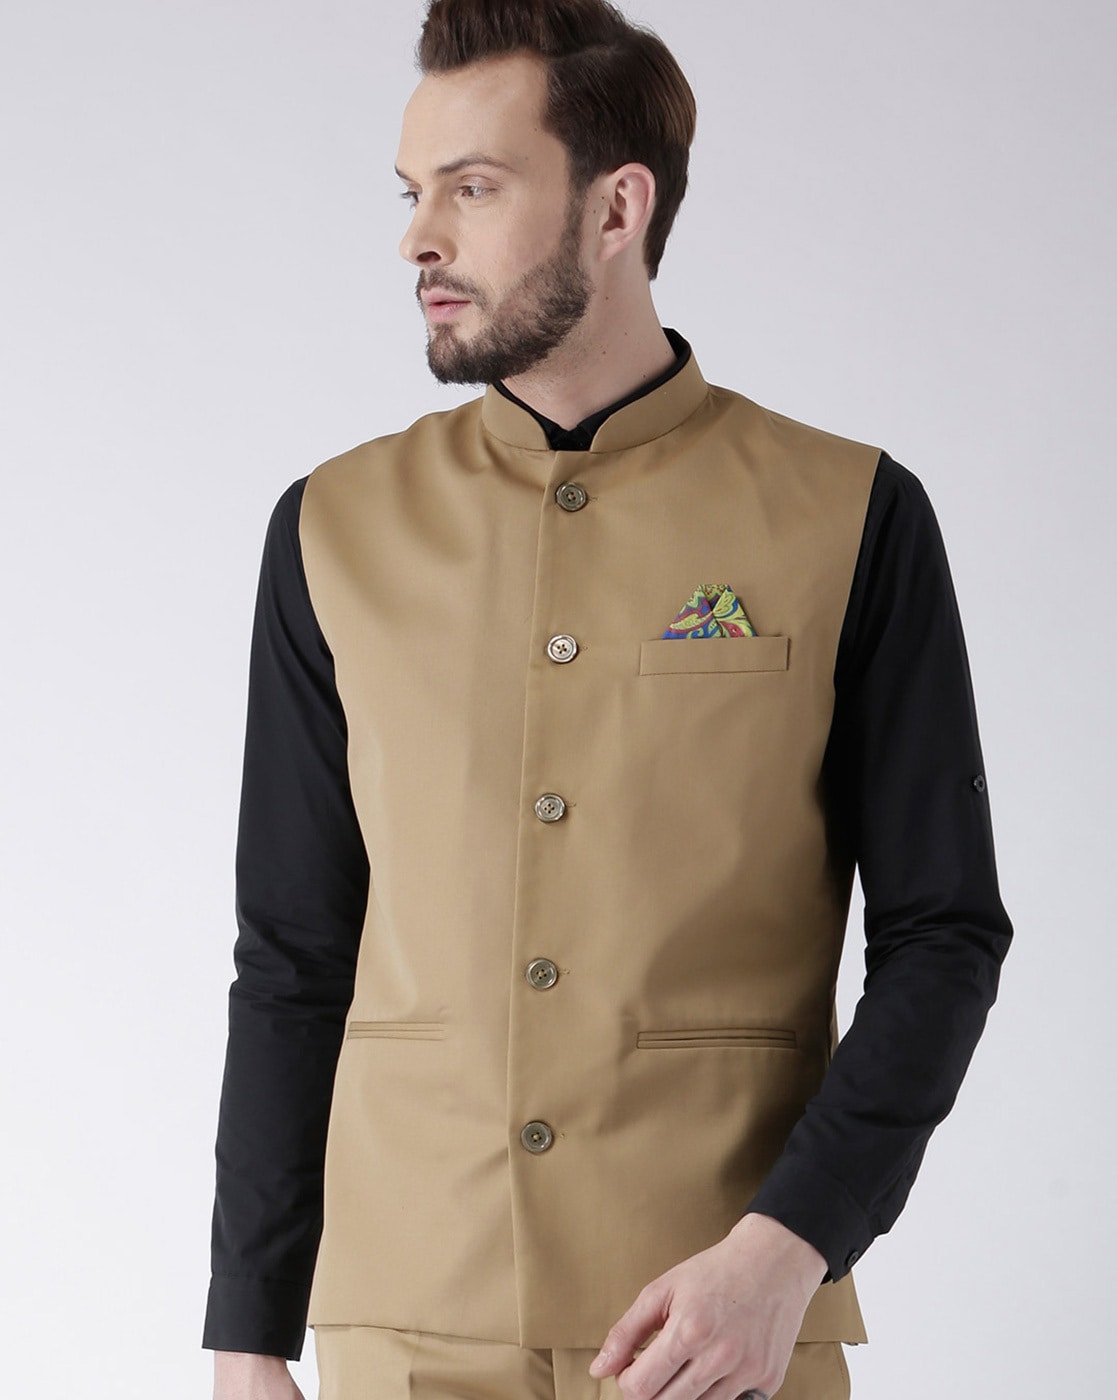 Buy hangup Nehru Jacket Yellow_Jute_Nehru_38 at Amazon.in